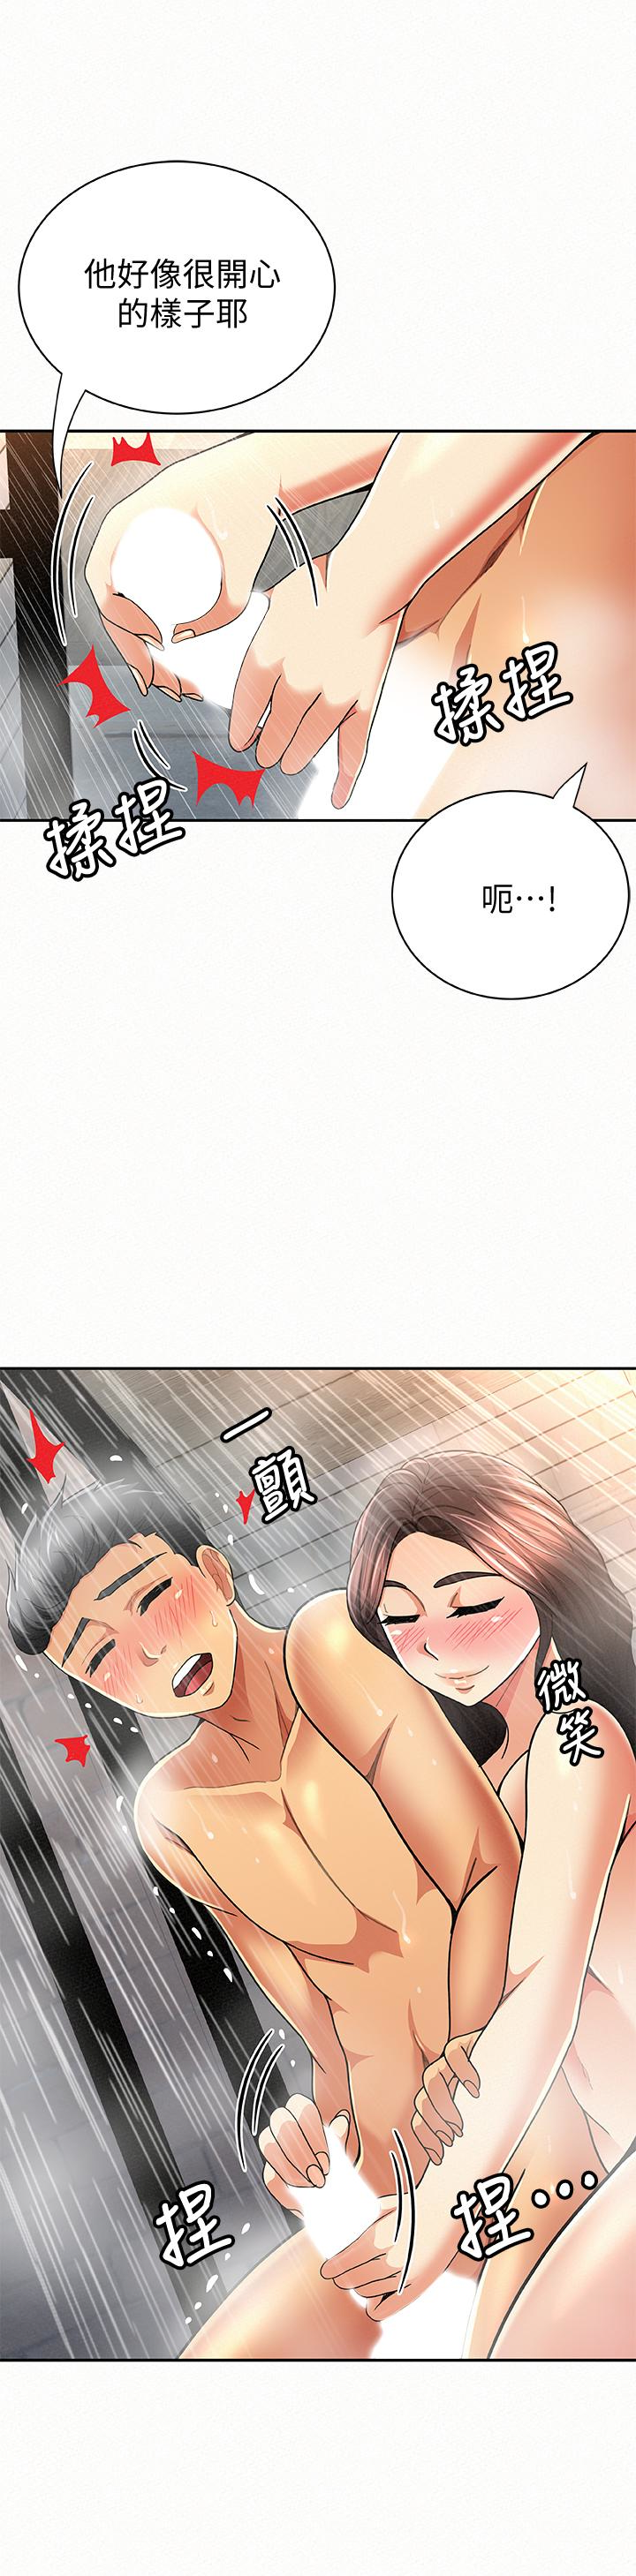 韩国污漫画 報告夫人 第33话-喜欢不同于老公的感觉 2